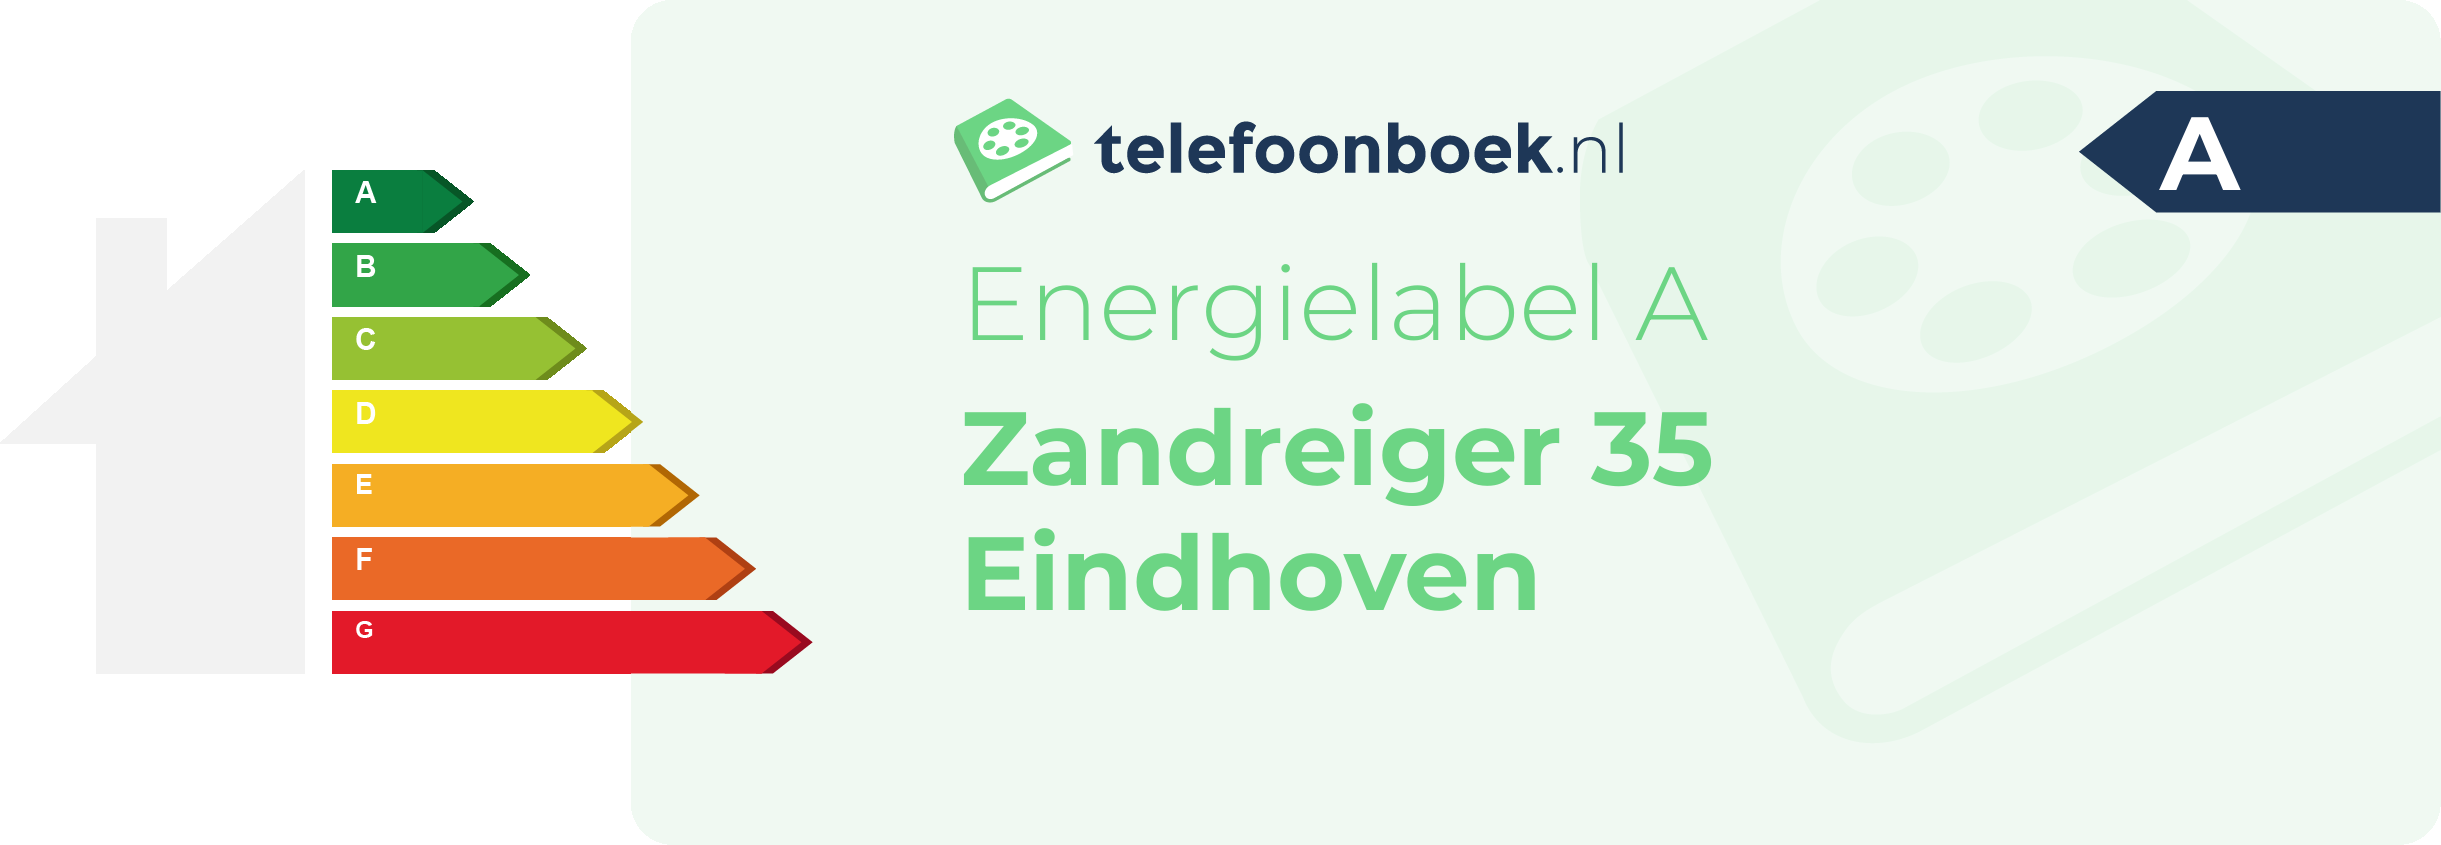 Energielabel Zandreiger 35 Eindhoven